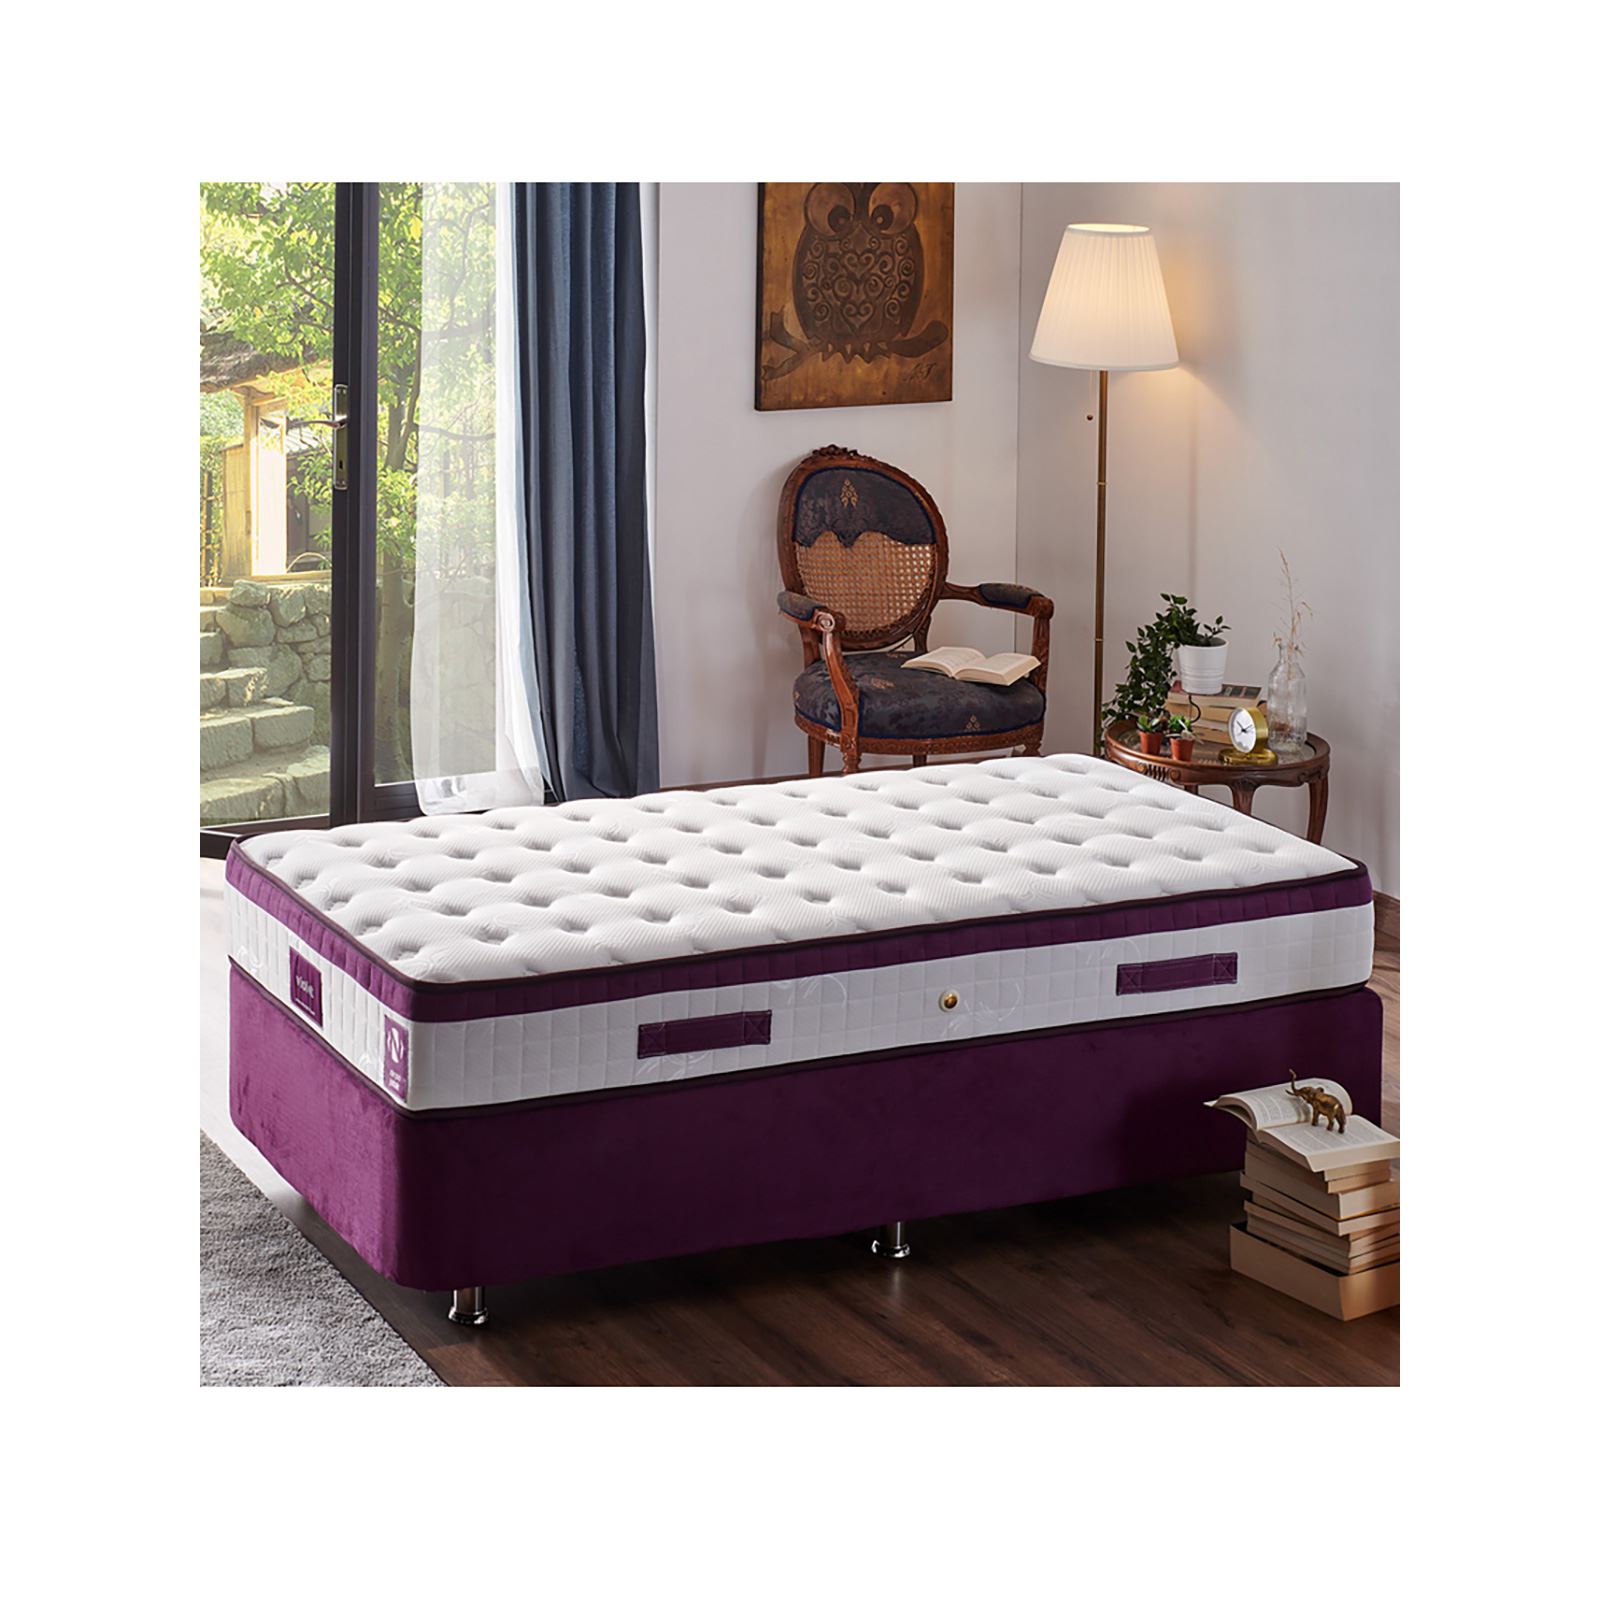 Niron Violet Yatak Seti 90x190 cm Tek Kişilik Yatak Baza Başlık Takımı Orta Sert Yatak Baza ve Başlığı Mor